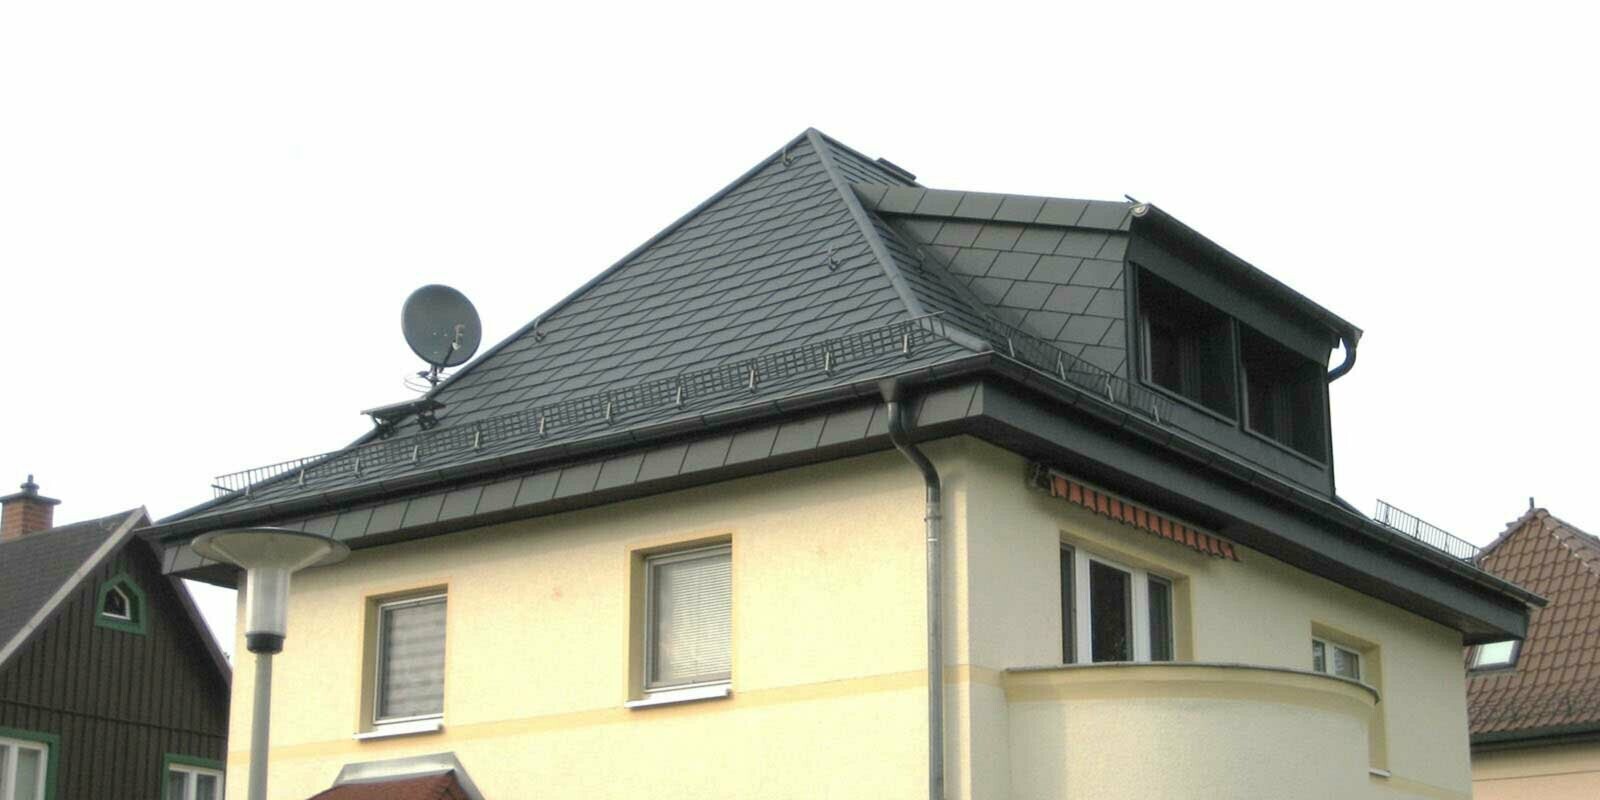 Ristrutturazione di un tetto a padiglione con scandole PREFA e abbaino, facciata gialla